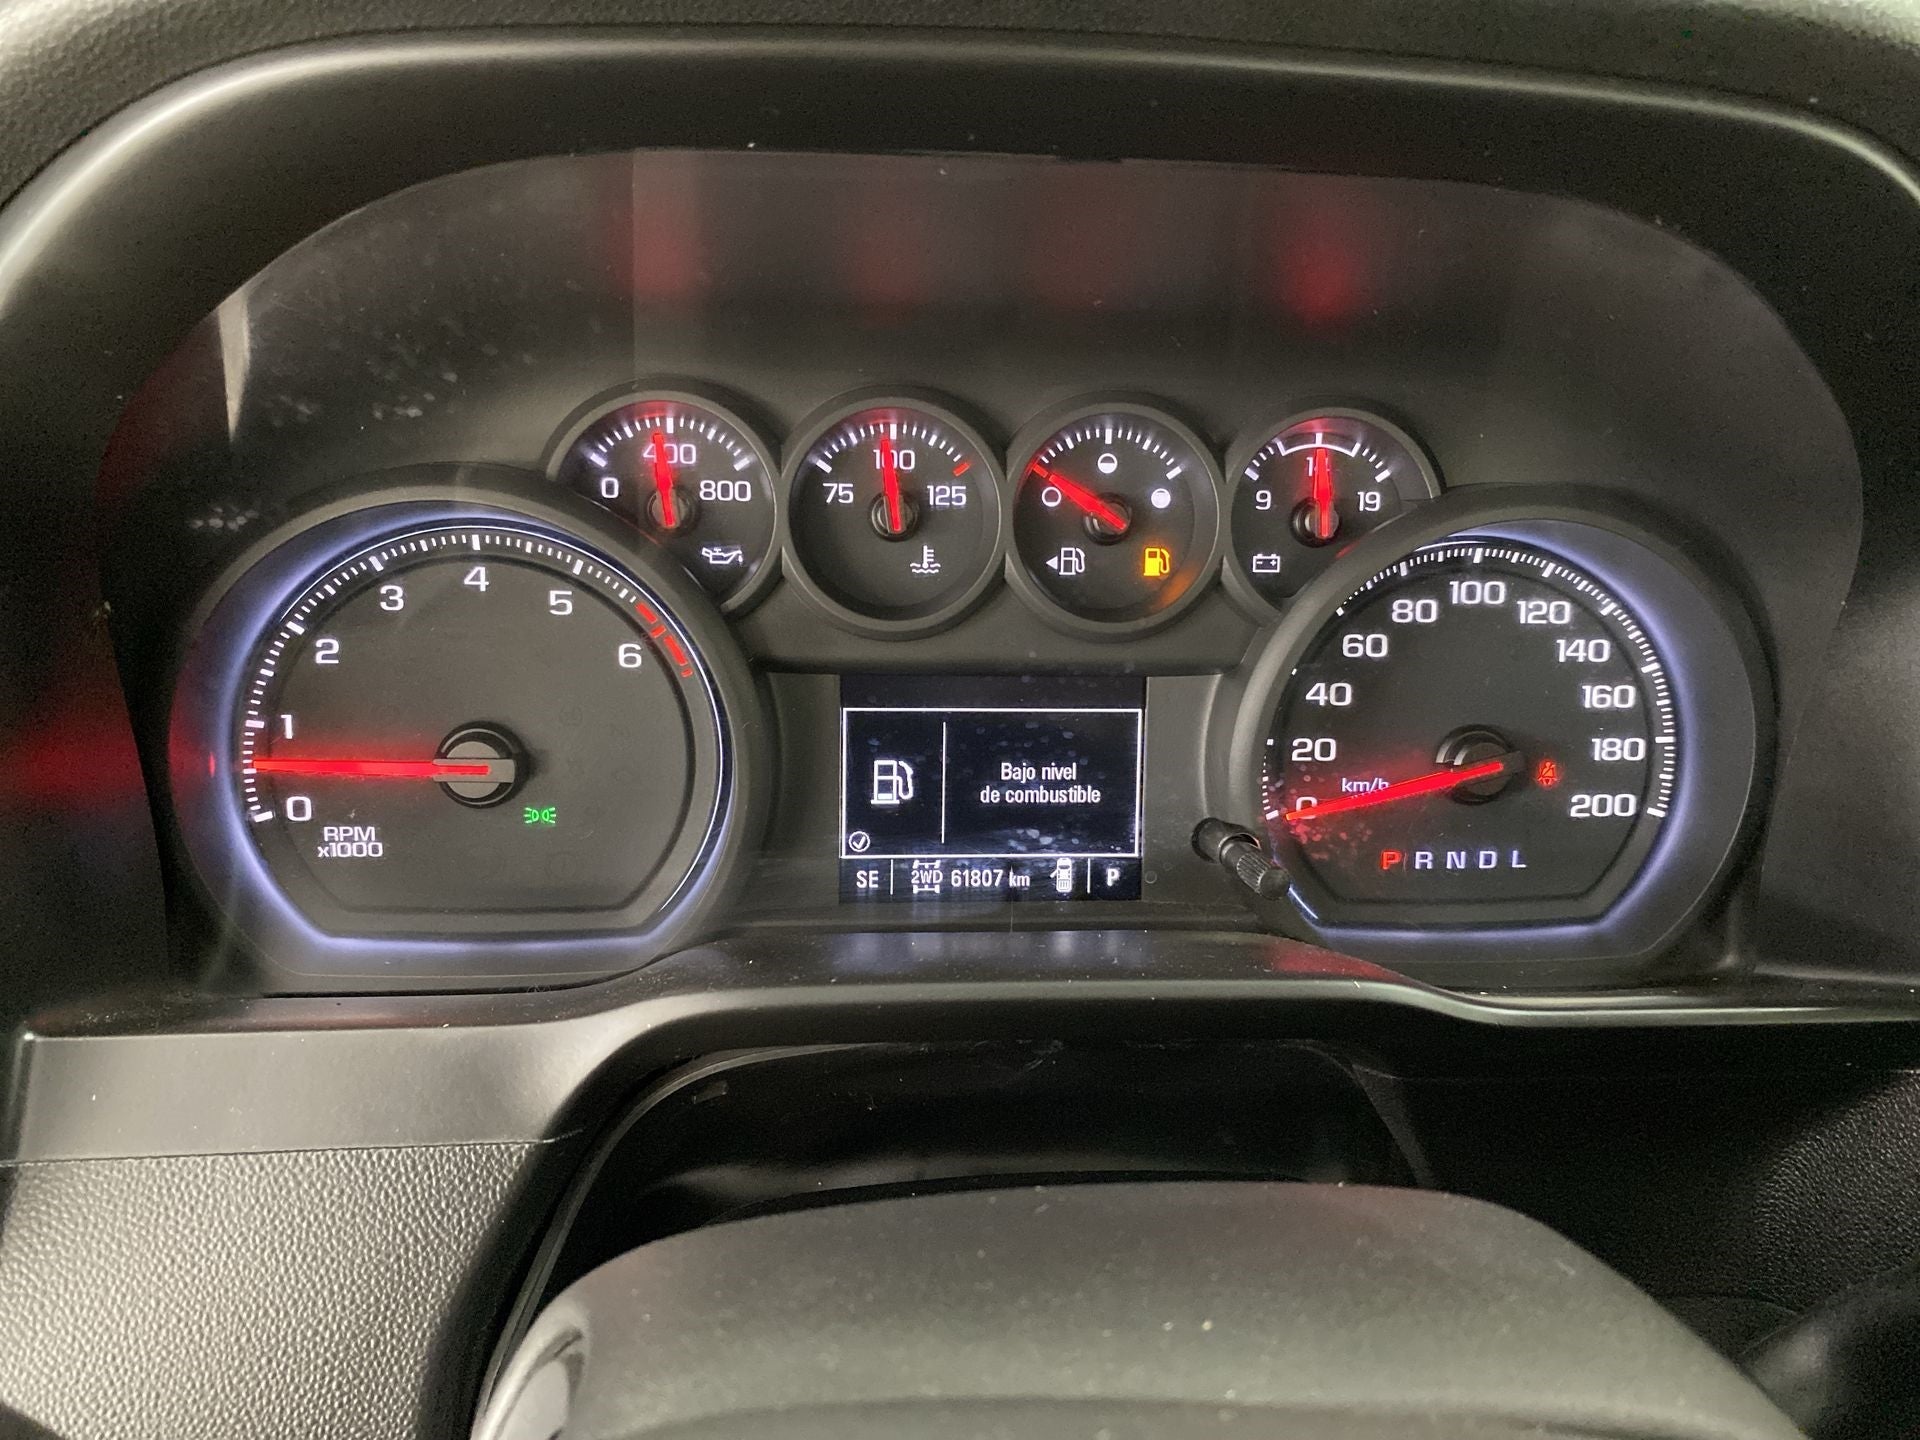 2020 Chevrolet Silverado 4.3 V6 1500 WT Cabina Regular 4x4 At